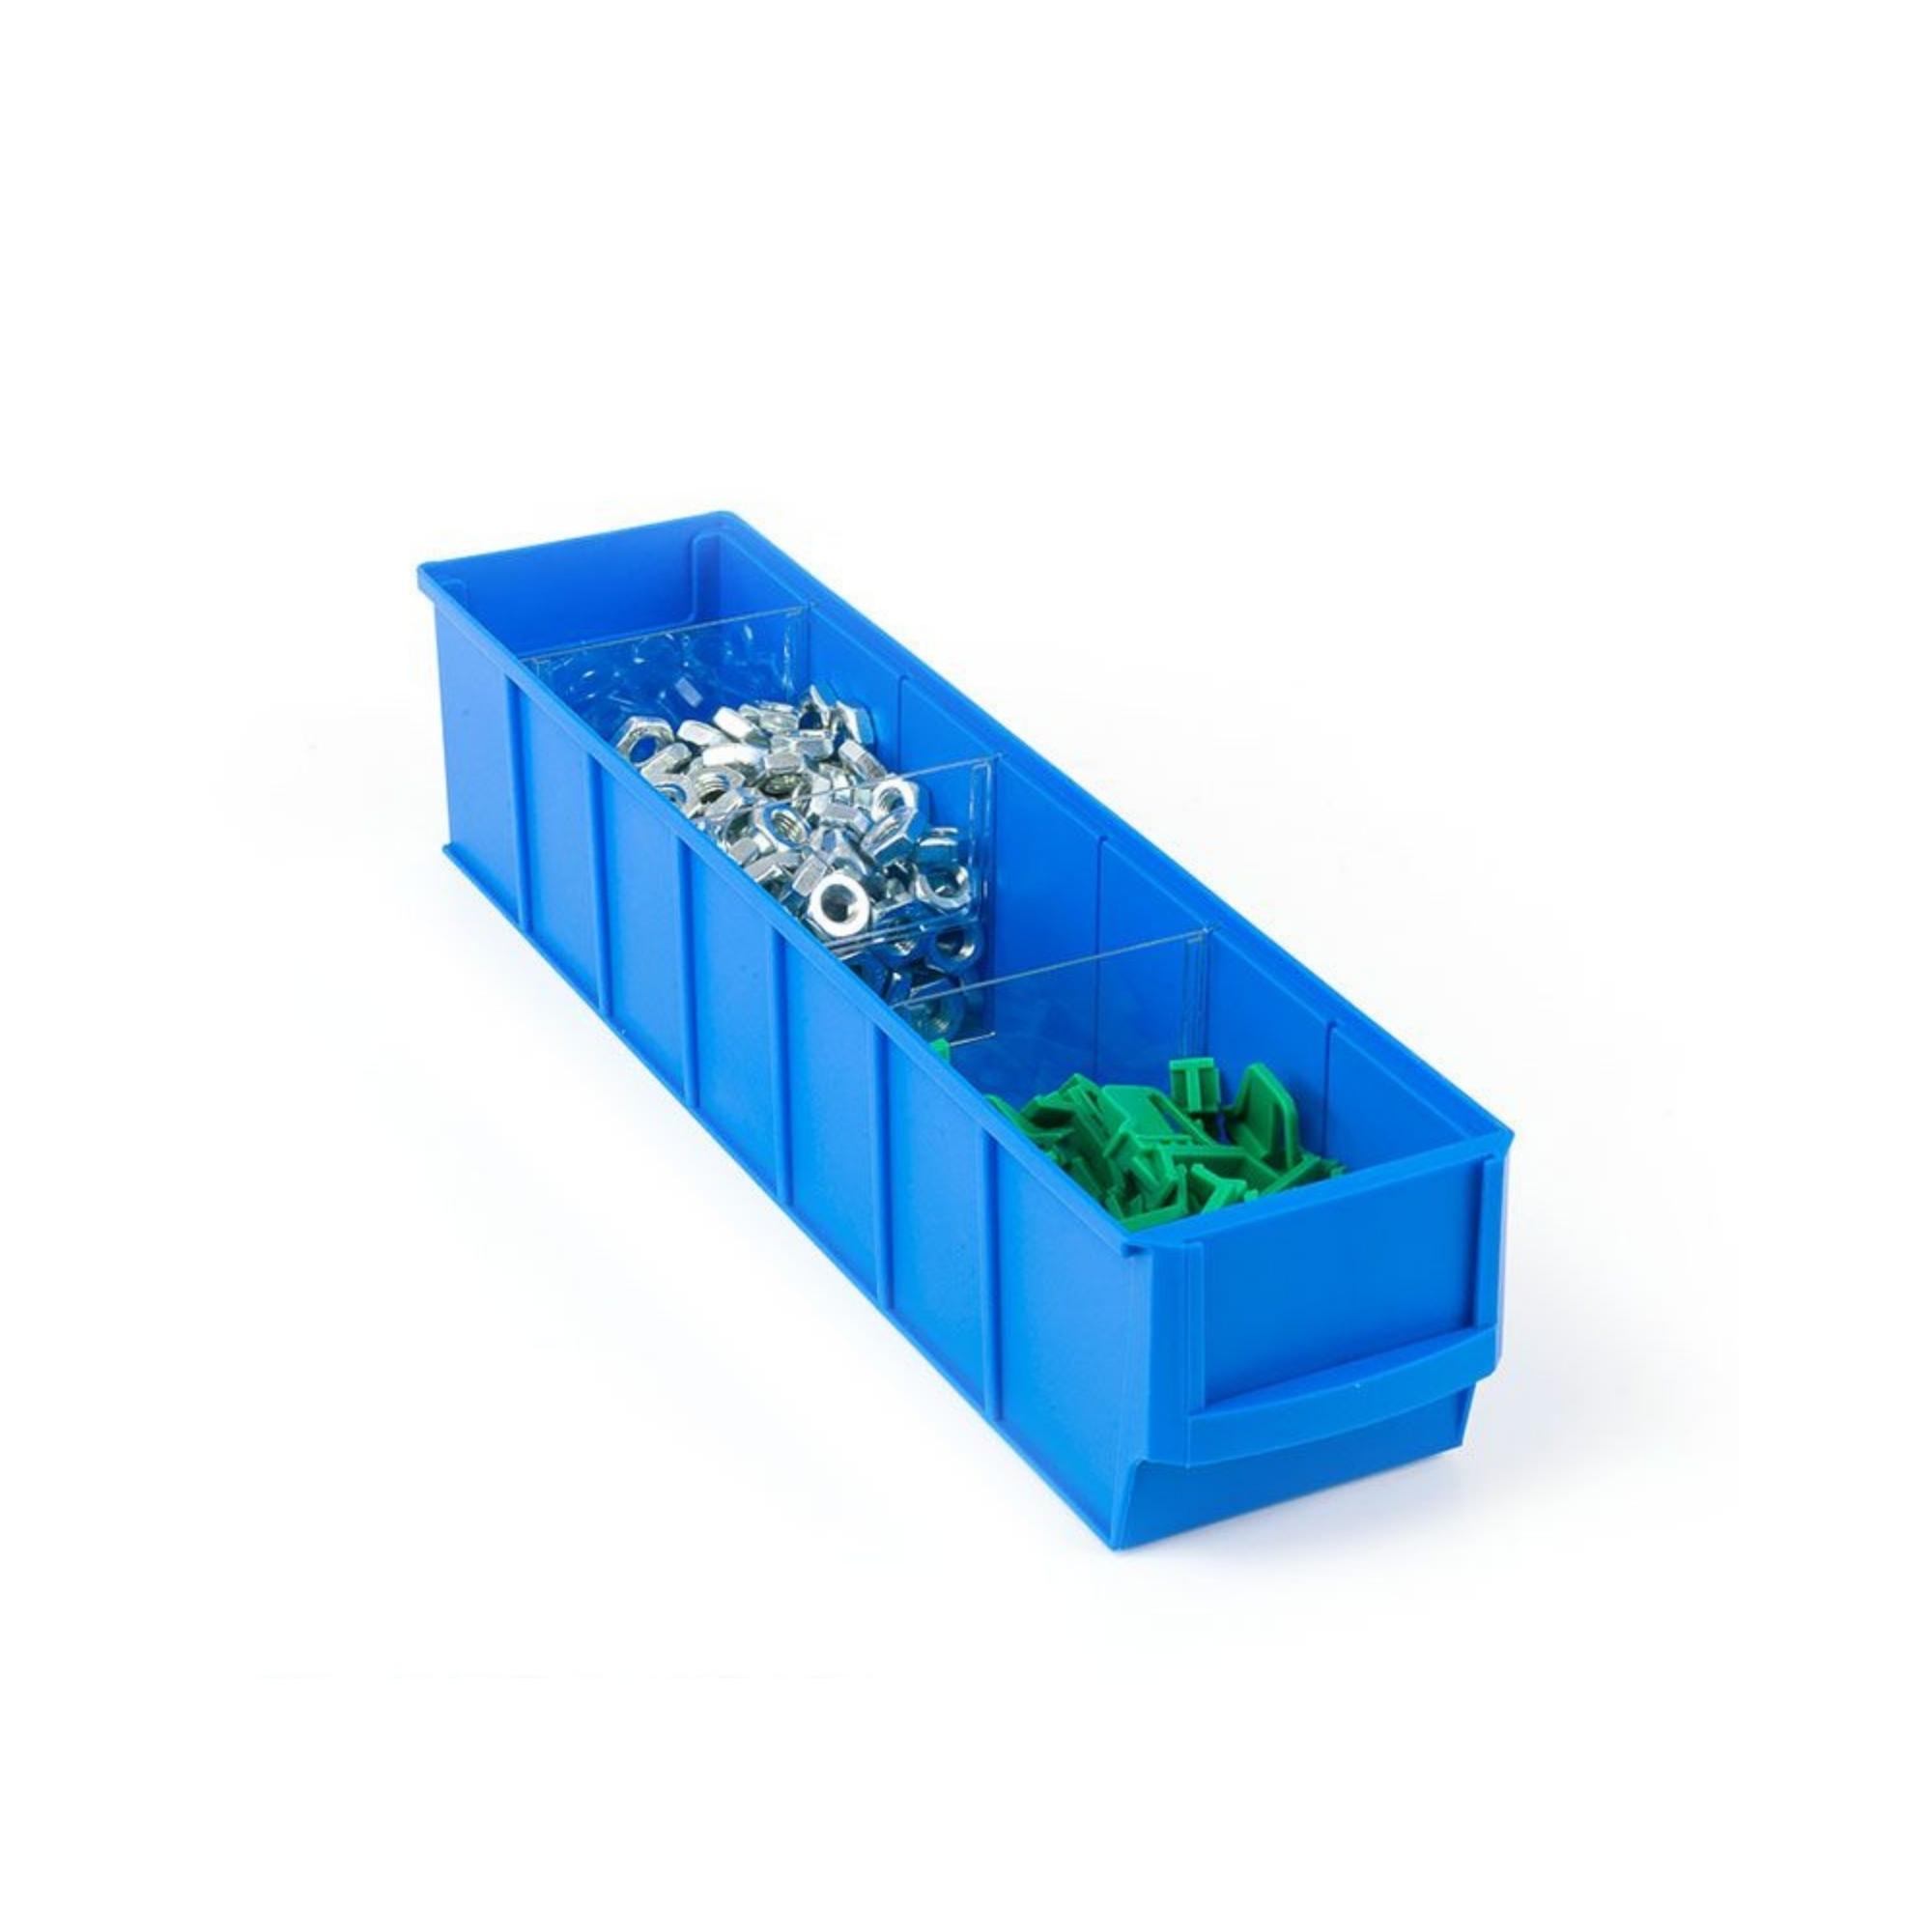 Blaue Industriebox 500 S | HxBxT 8,1x9,1x50cm | 2,8 Liter| Sichtlagerkasten, Sortimentskasten, Sortimentsbox, Kleinteilebox